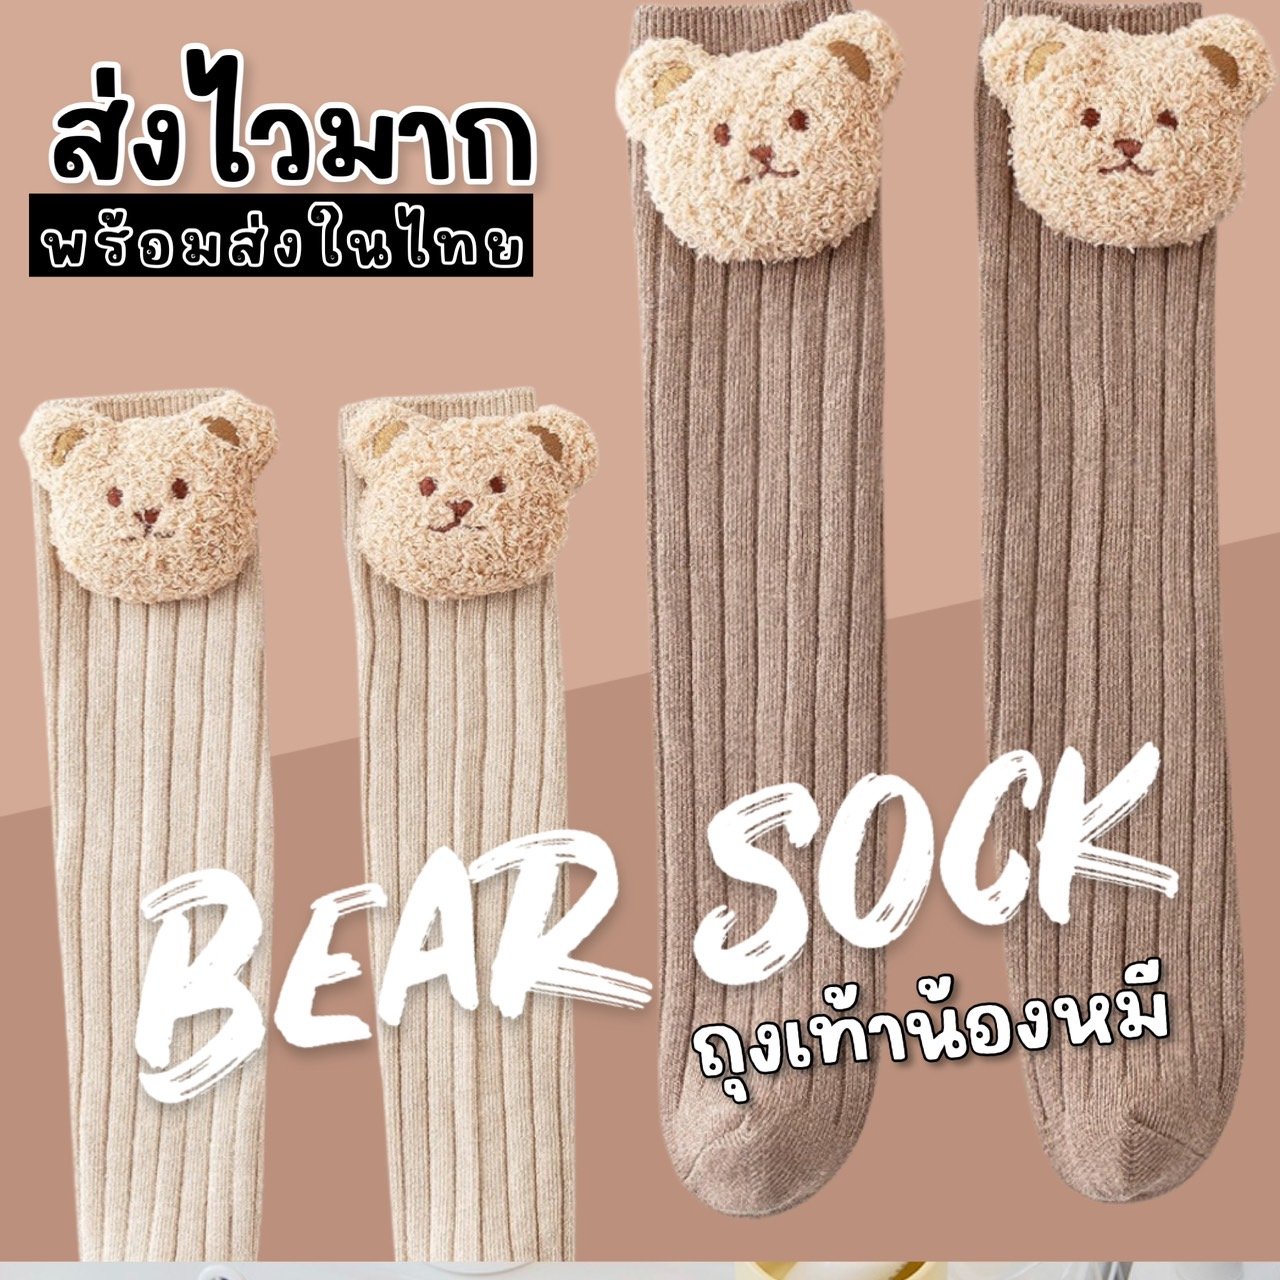 Bear sock